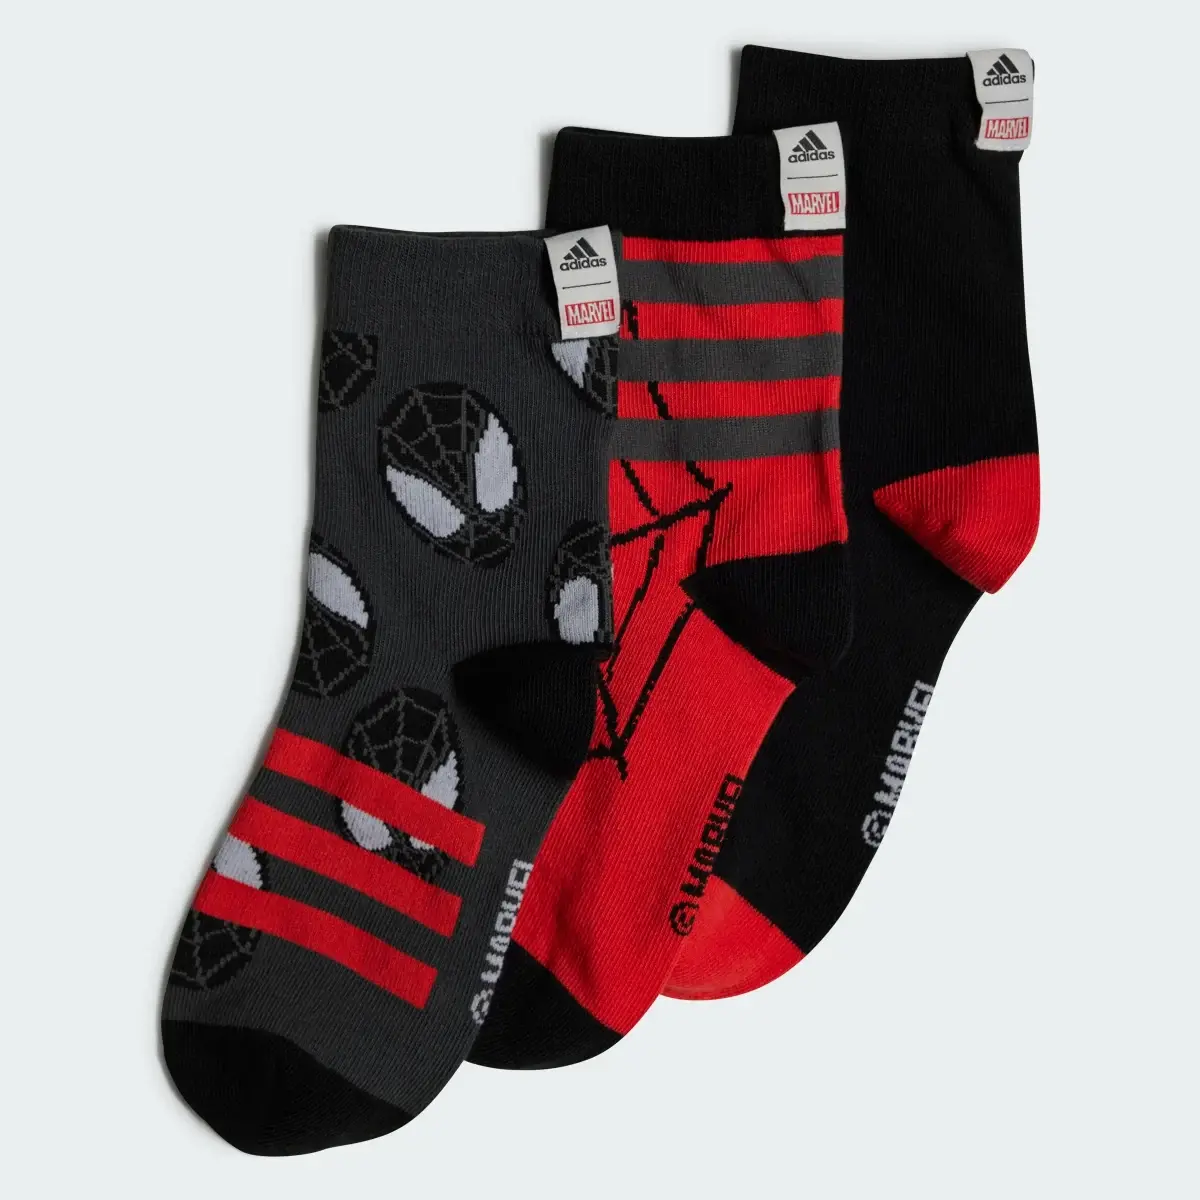 Adidas Marvel Spider-Man Crew Socken, 3 Paar. 2